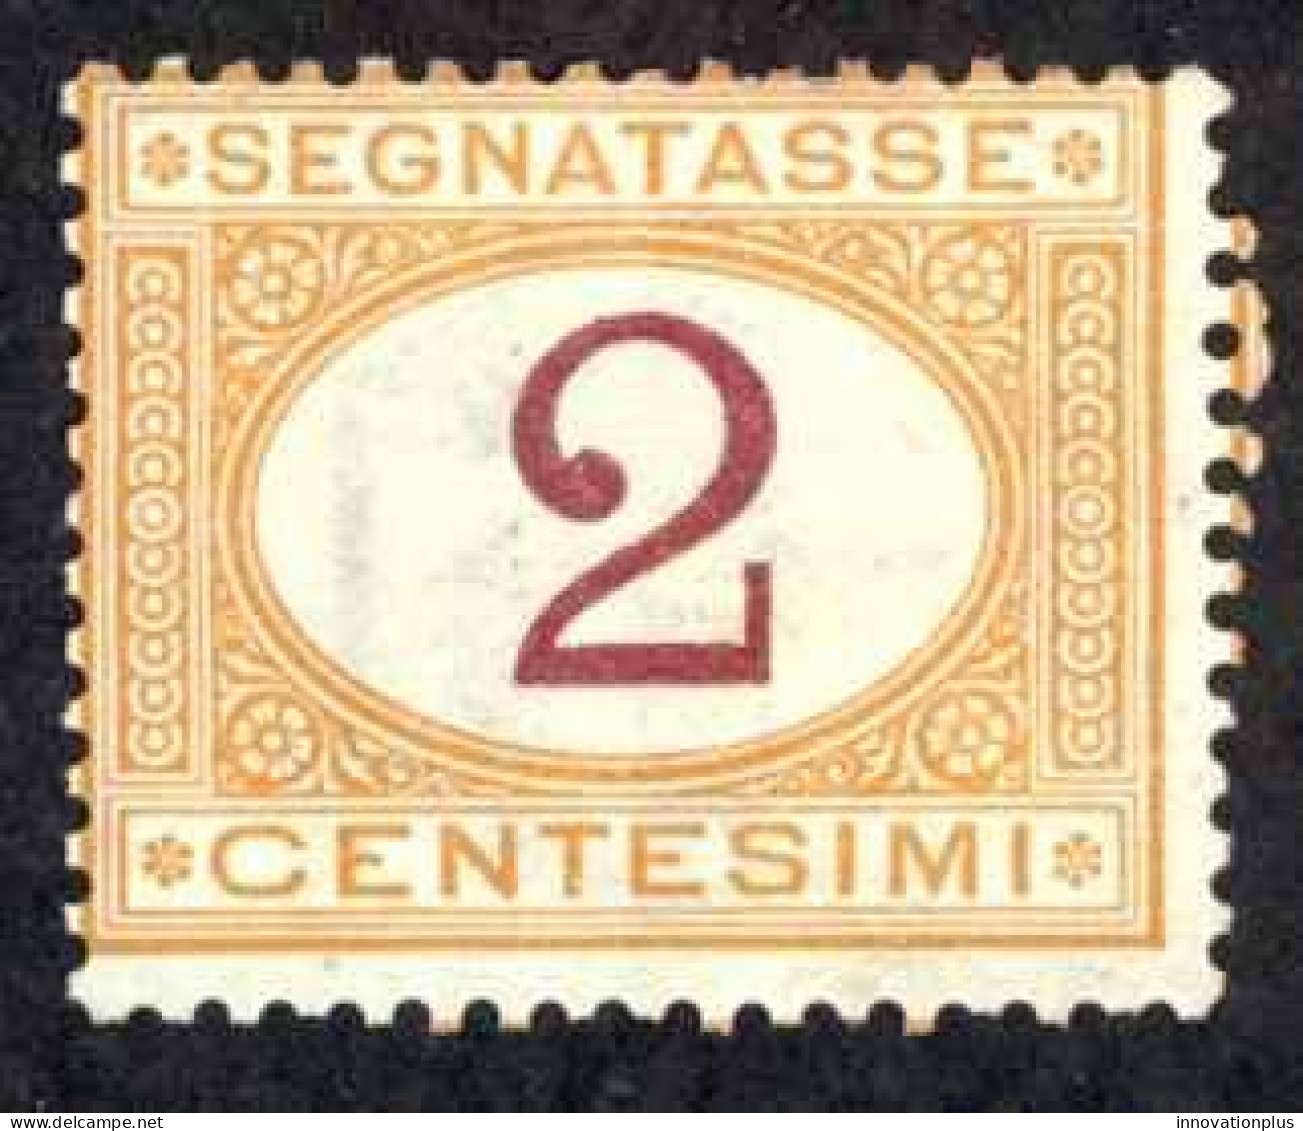 Italy Sc# J4 MH 1870-1925 2c Postage Due - Segnatasse